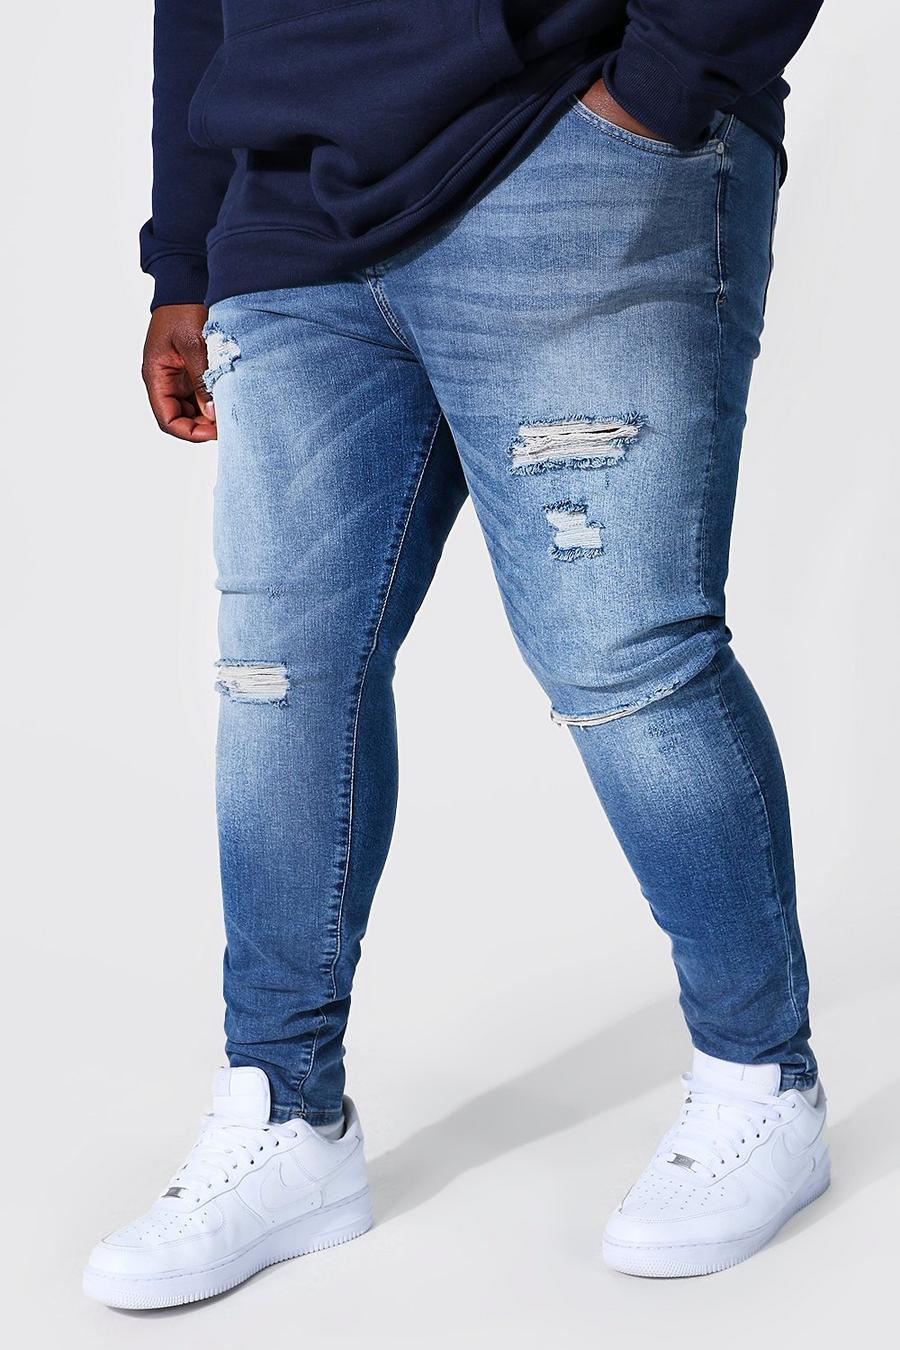 כחול בהיר azzurro ג'ינס סופר סקיני עם קרעים מרובים, מידות גדולות